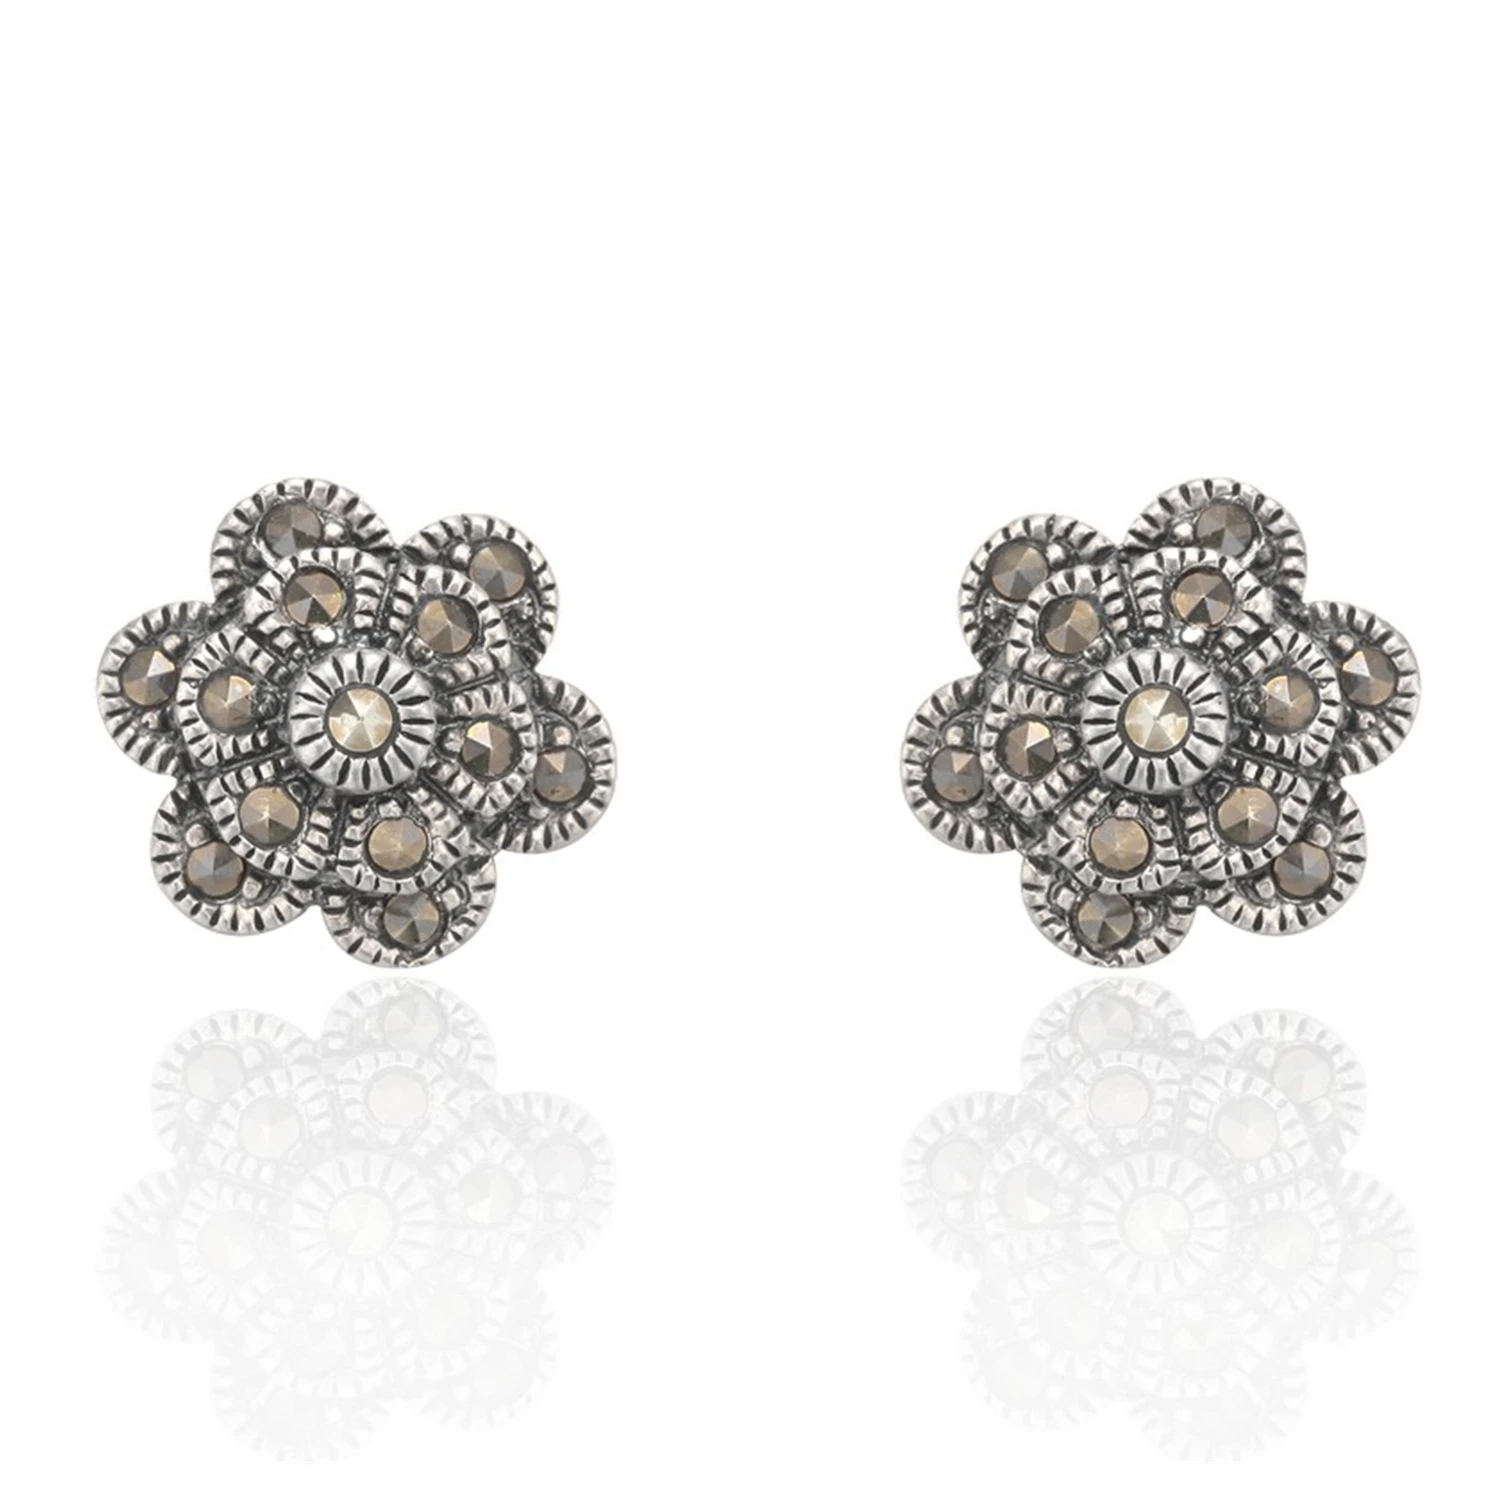 Marcasite high quality zircon flower earrings 925 silver stud earrings female jewelry for women gift(图2)